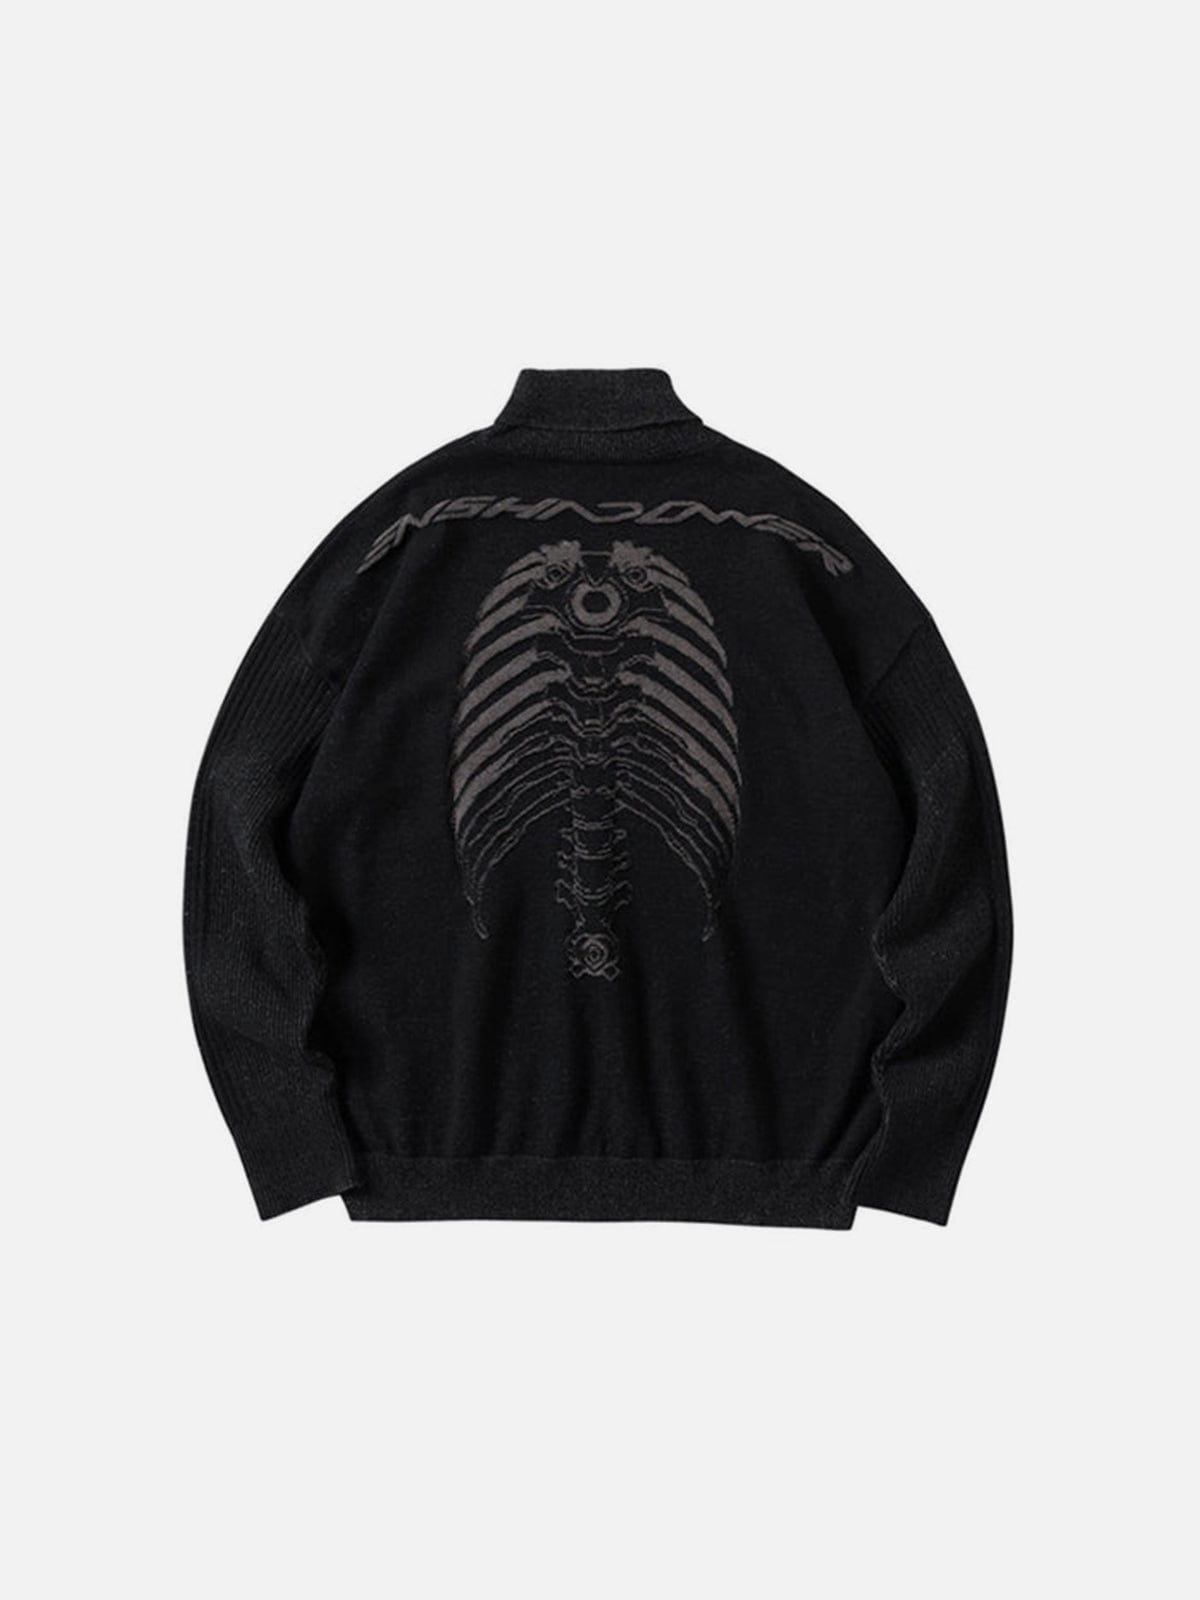 NEV Dark Mechanical Skeleton Print Knitted Sweater